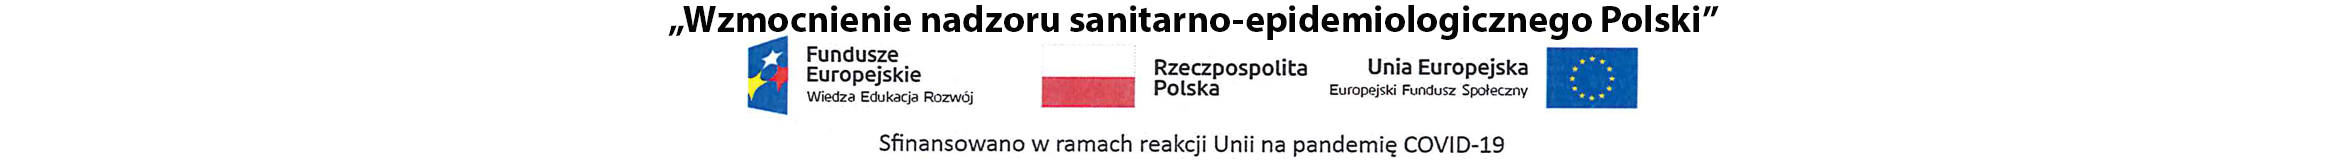 Wzmocnienie nadzoru sanitarno - epidemiologicznego Polski